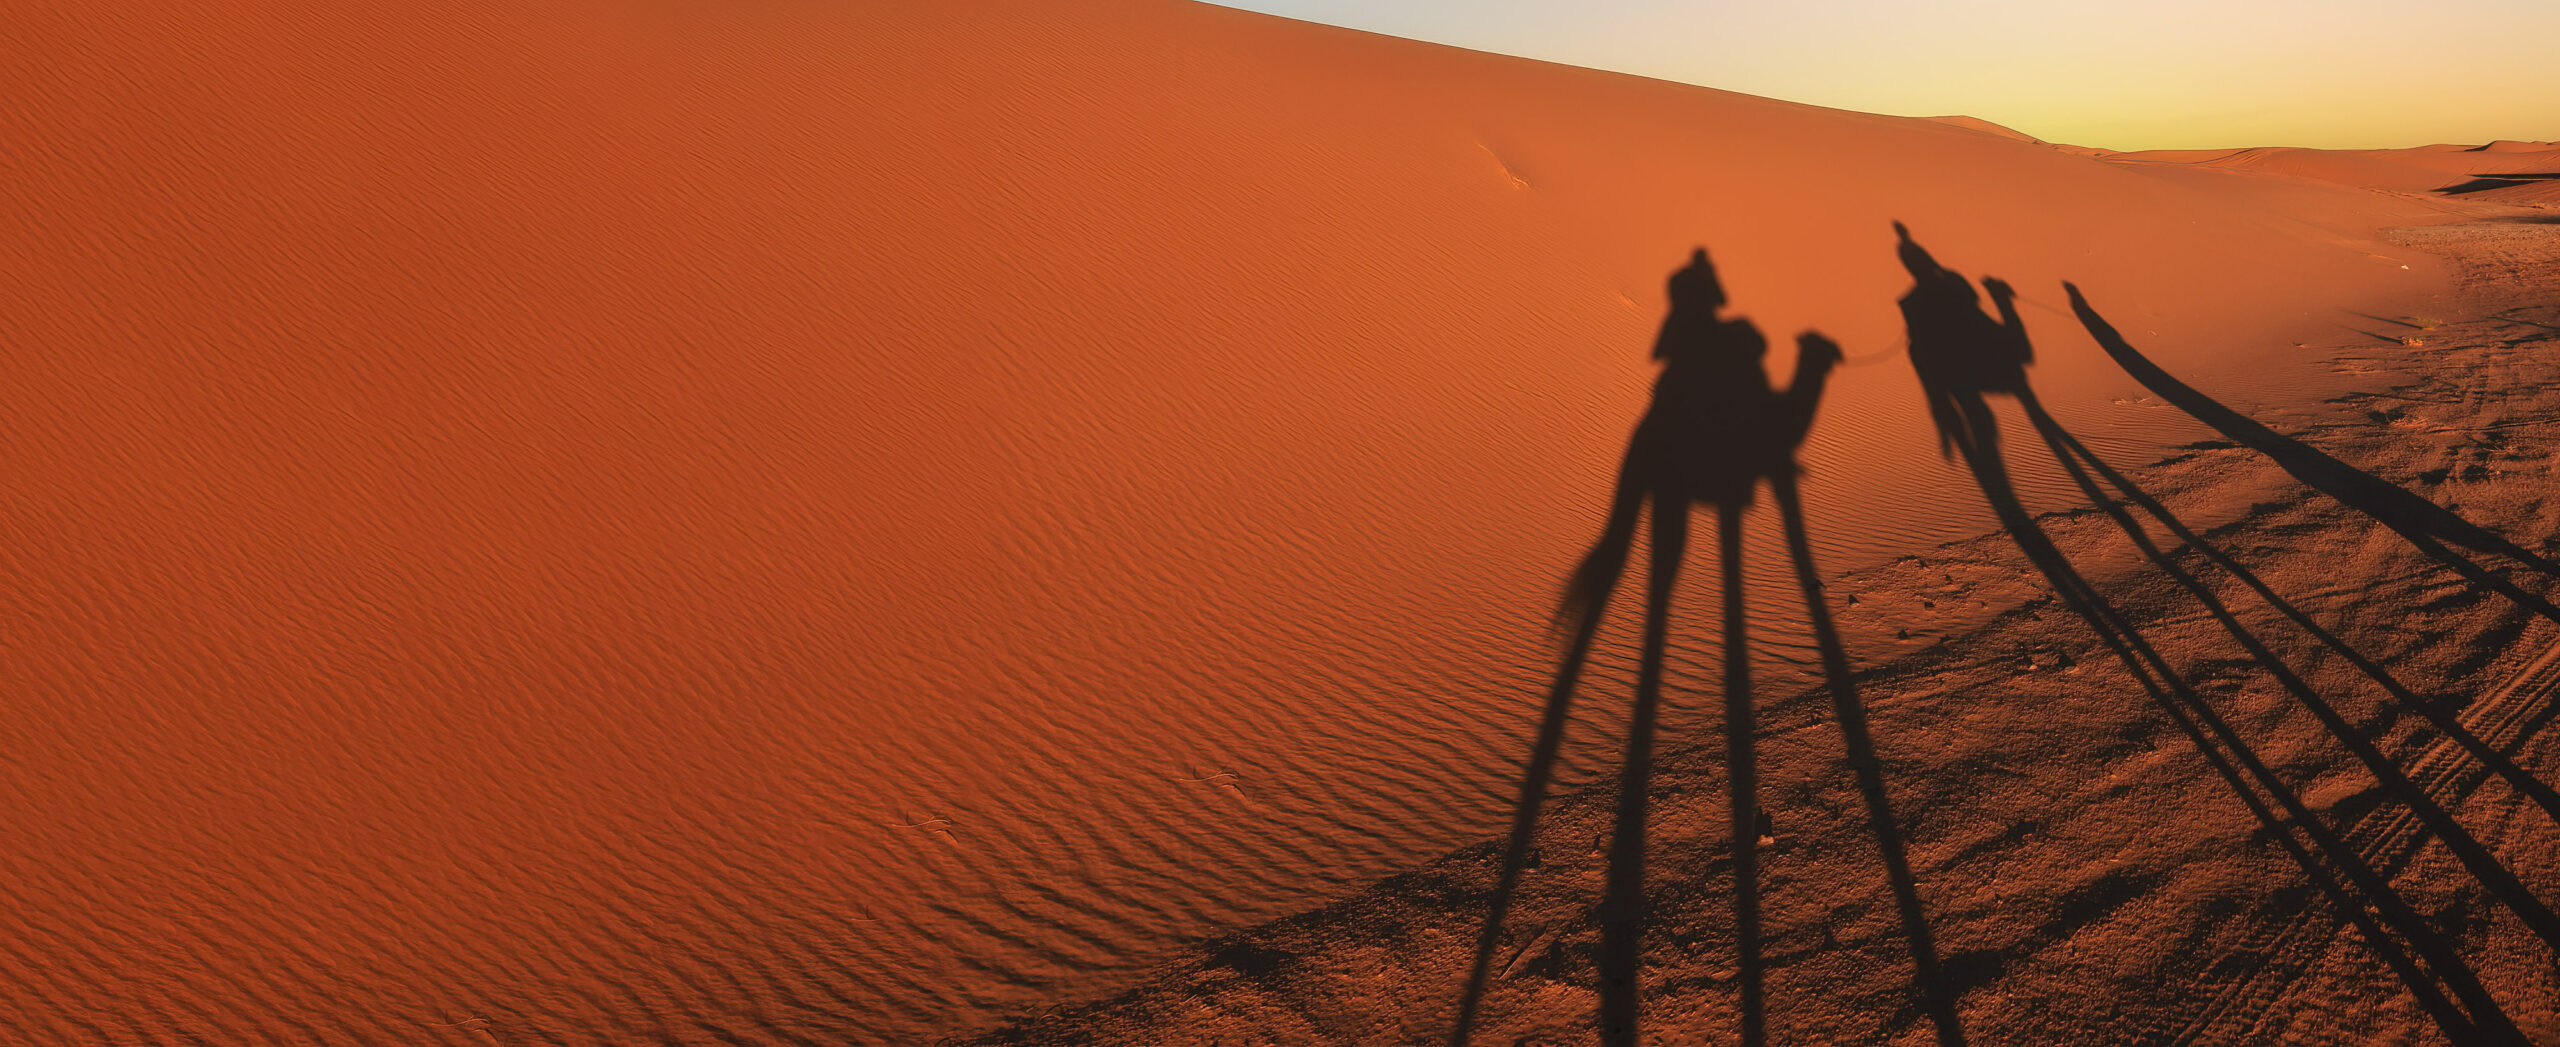 Marocco dune nel deserto